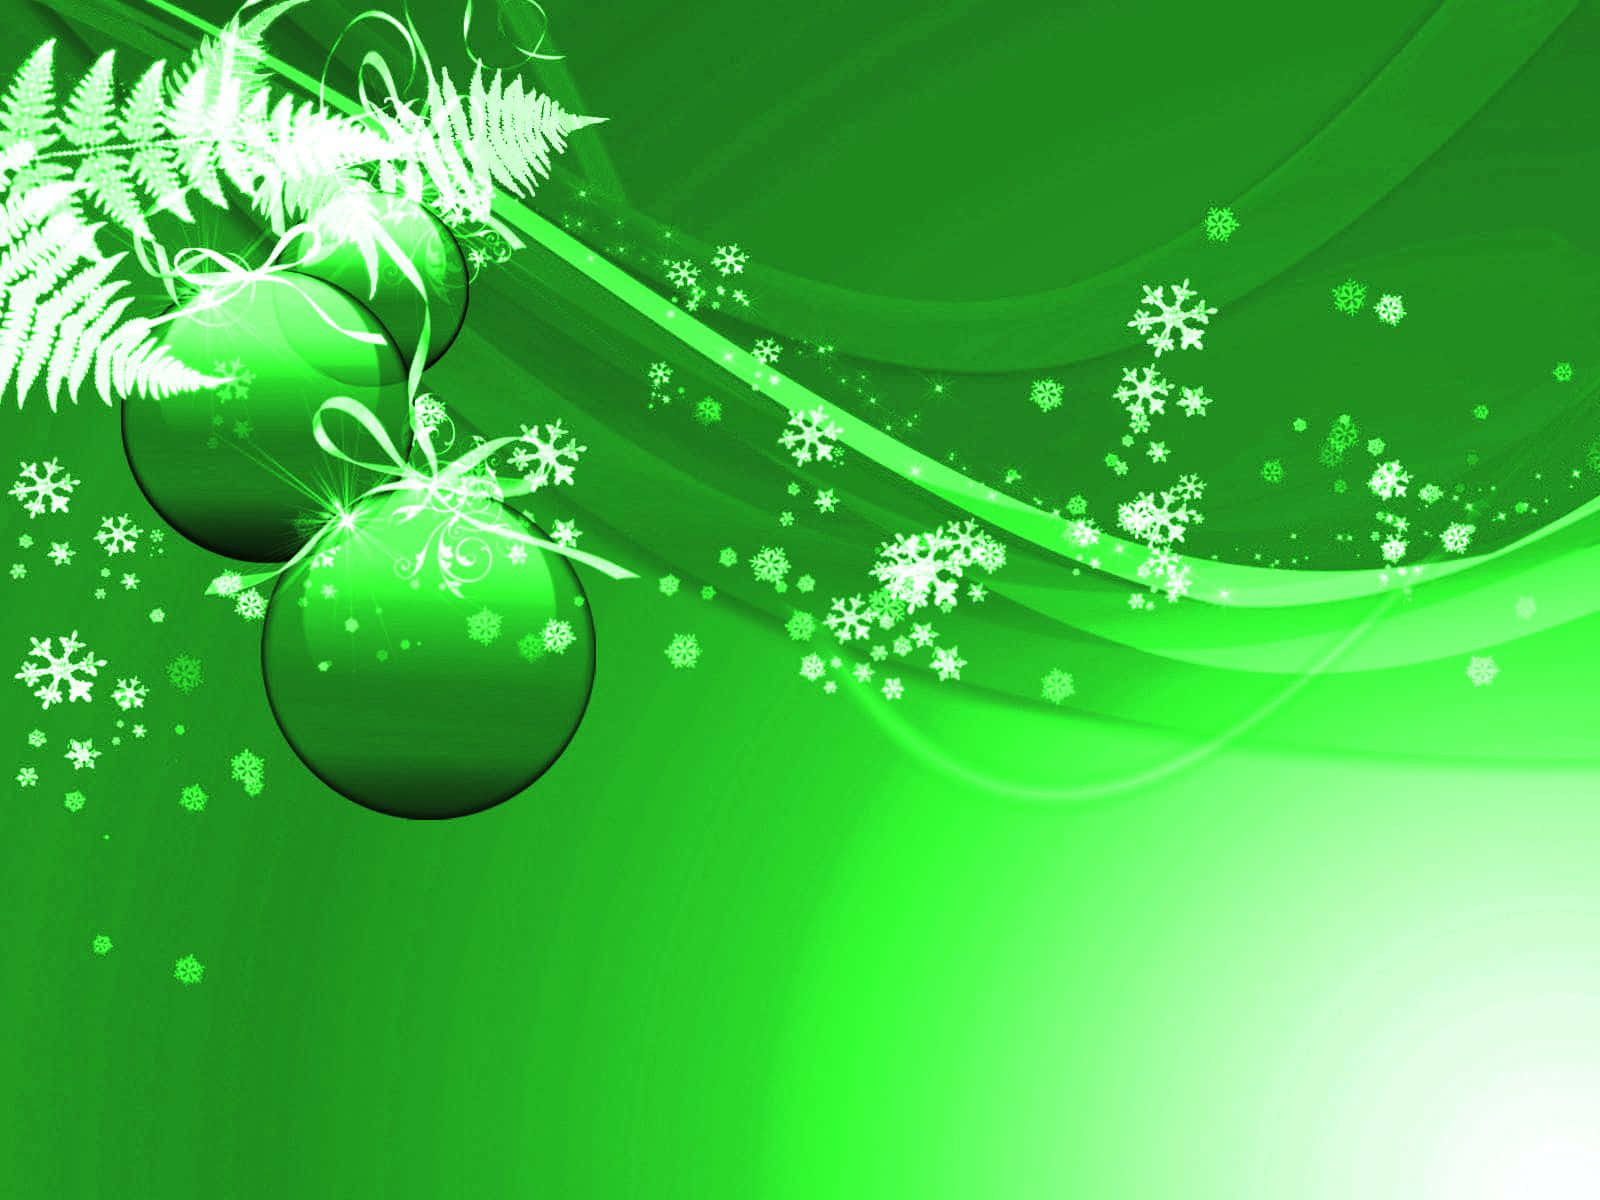 Fejrer en højtidlig og bæredygtig sæson med grøn jul. Wallpaper